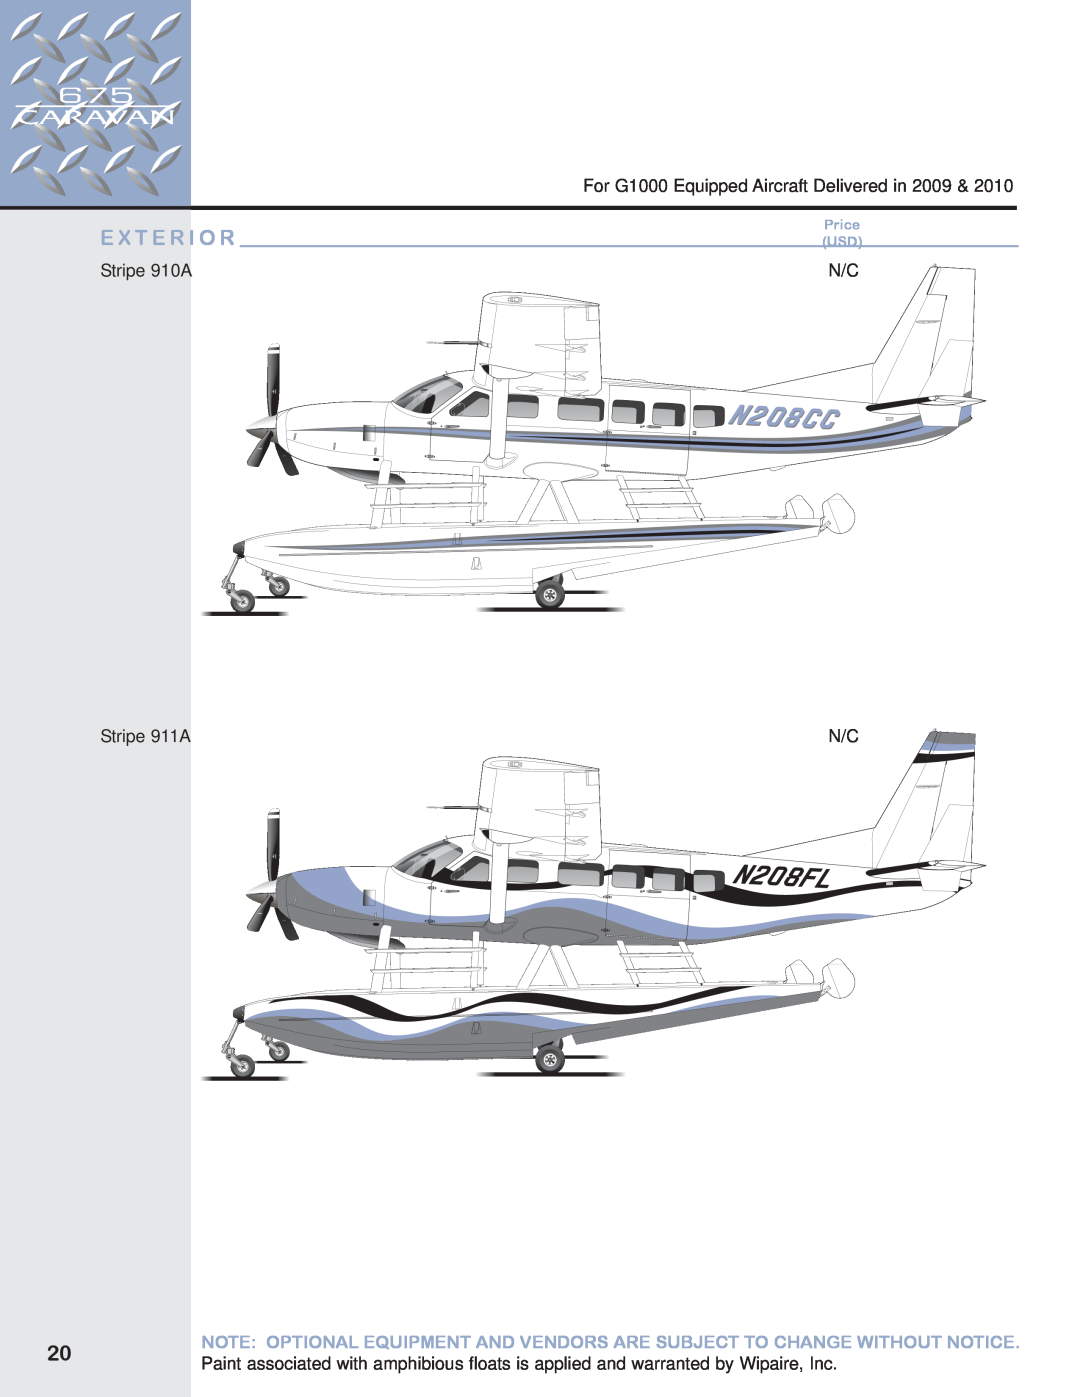 Garmin 675 manual E X T E R I O R, For G1000 Equipped Aircraft Delivered in 2009, Stripe 910A, Stripe 911A, Price USD 